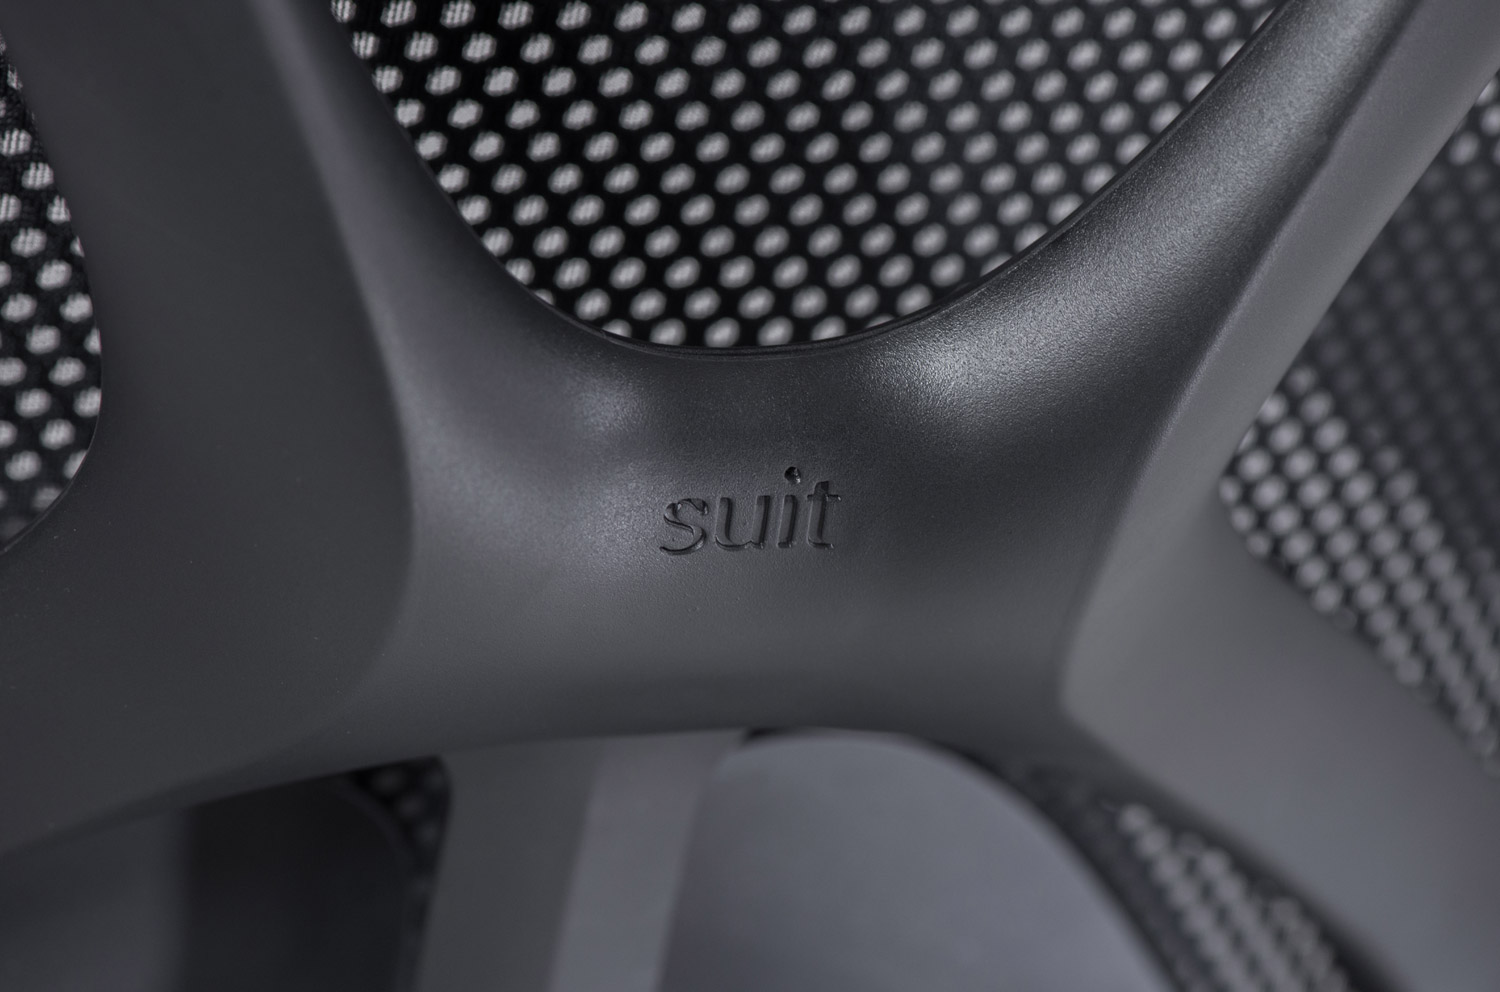 Офисное кресло Suit (Китай)